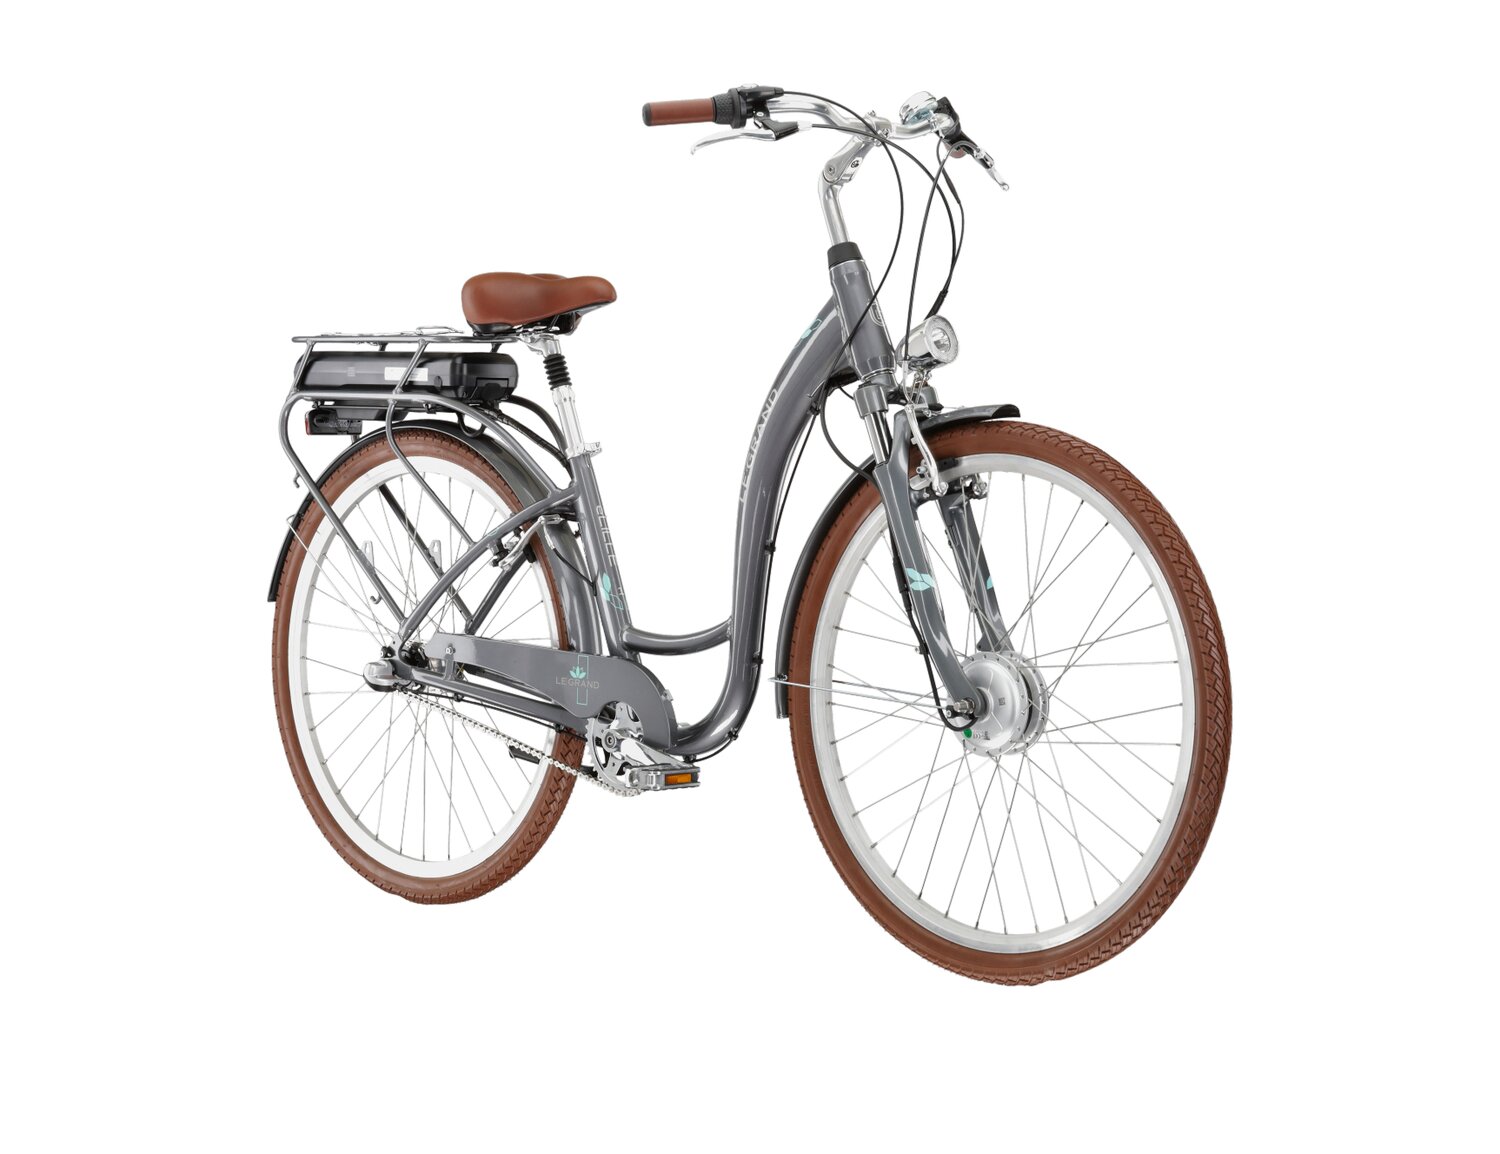  Elektryczny rower miejski Le Grand Elille 1 450 Wh na aluminiowej ramie w kolorze grafitowym wyposażony w osprzęt Shimano i napęd elektryczny Bafang